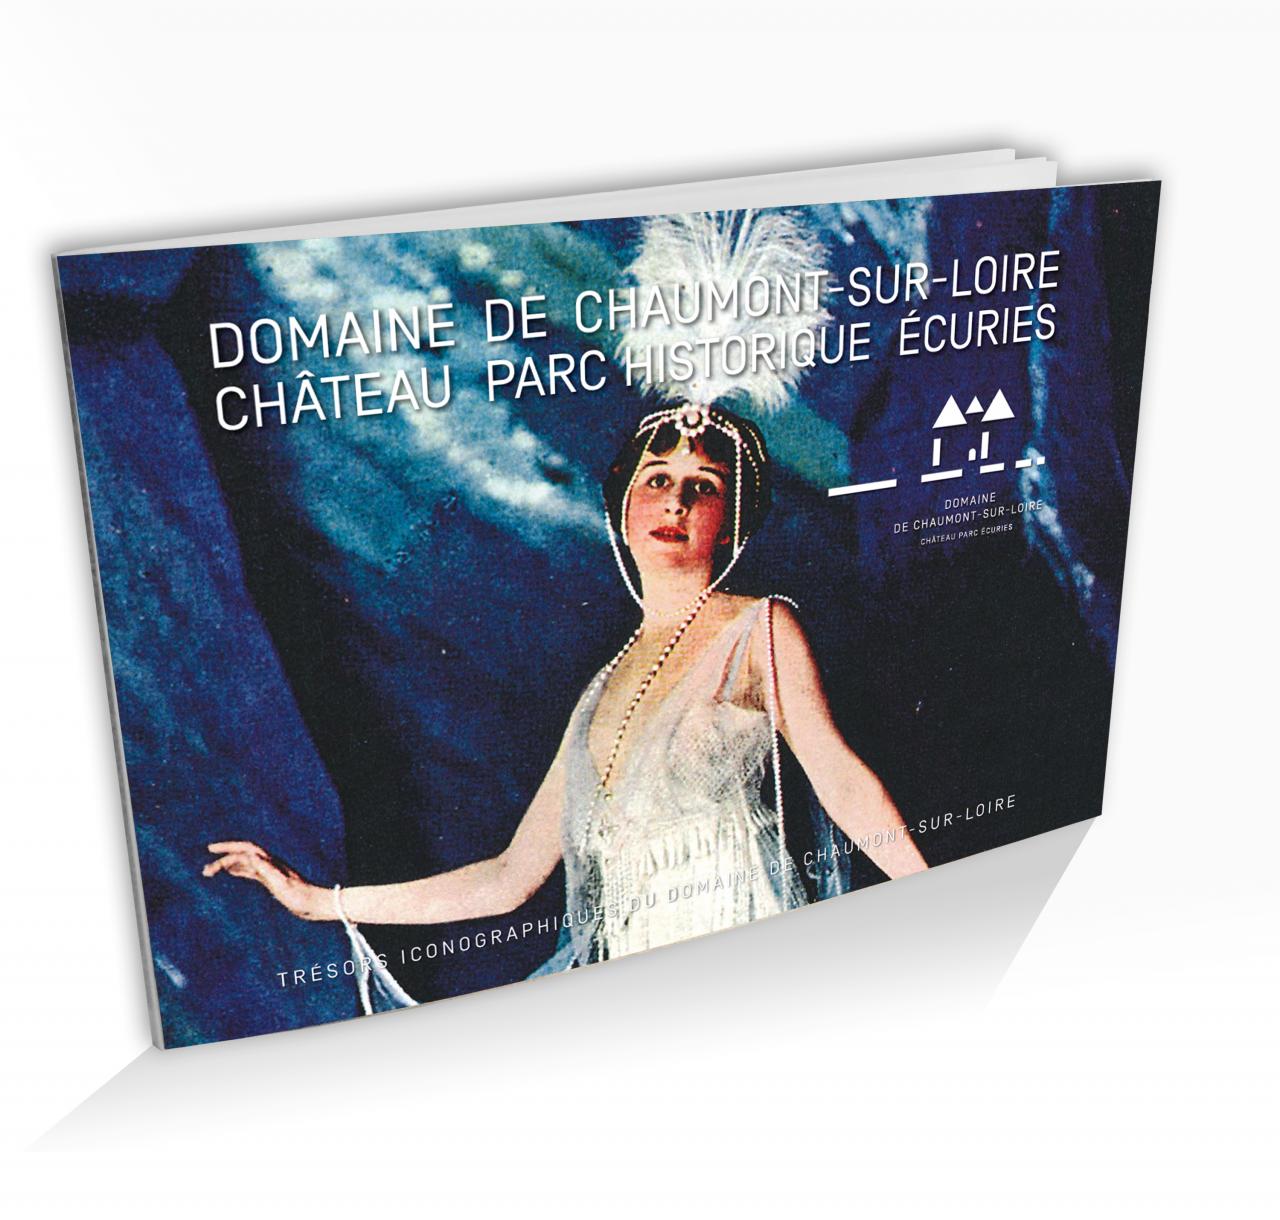 Invités et hôtes illustres Trésors iconographiques Domaine Chaumont-sur-Loire